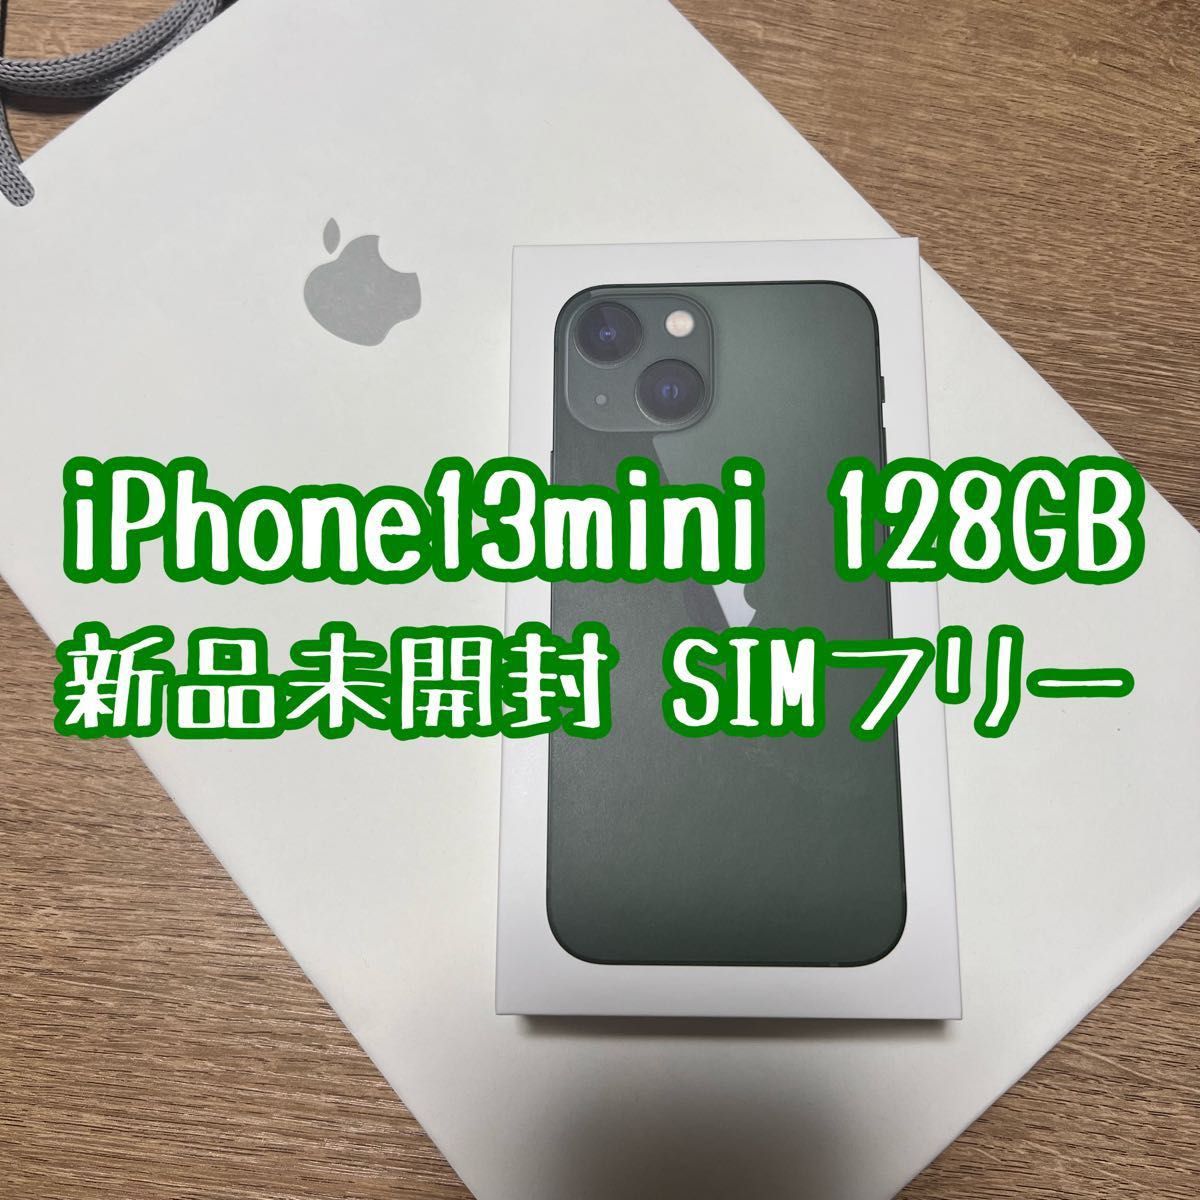 スマートフォン/携帯電話 スマートフォン本体 iPhone13mini 128GB グリーン 新品 SIMフリー Apple